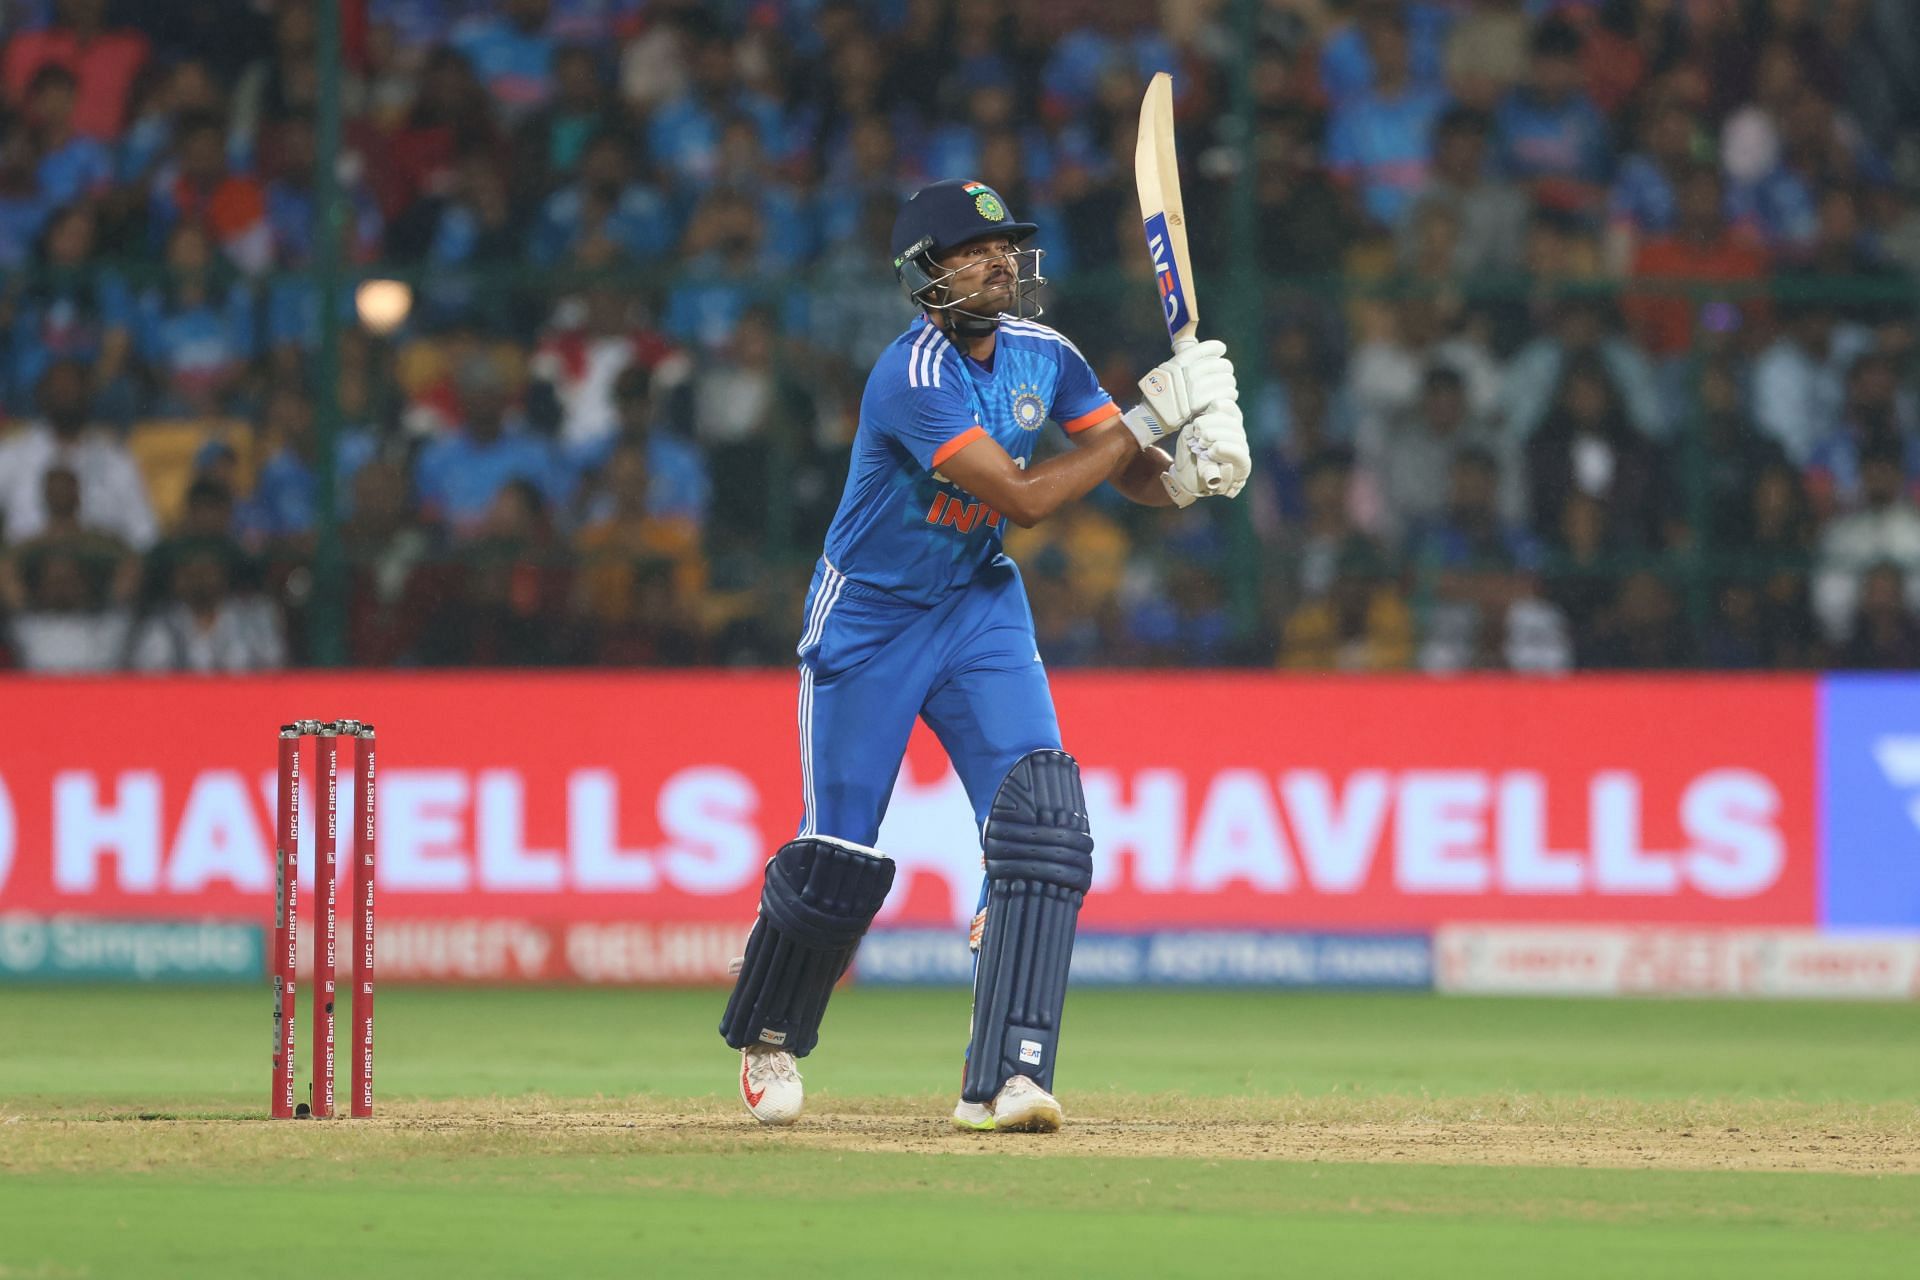 India v Australia - T20I Series: Game 5